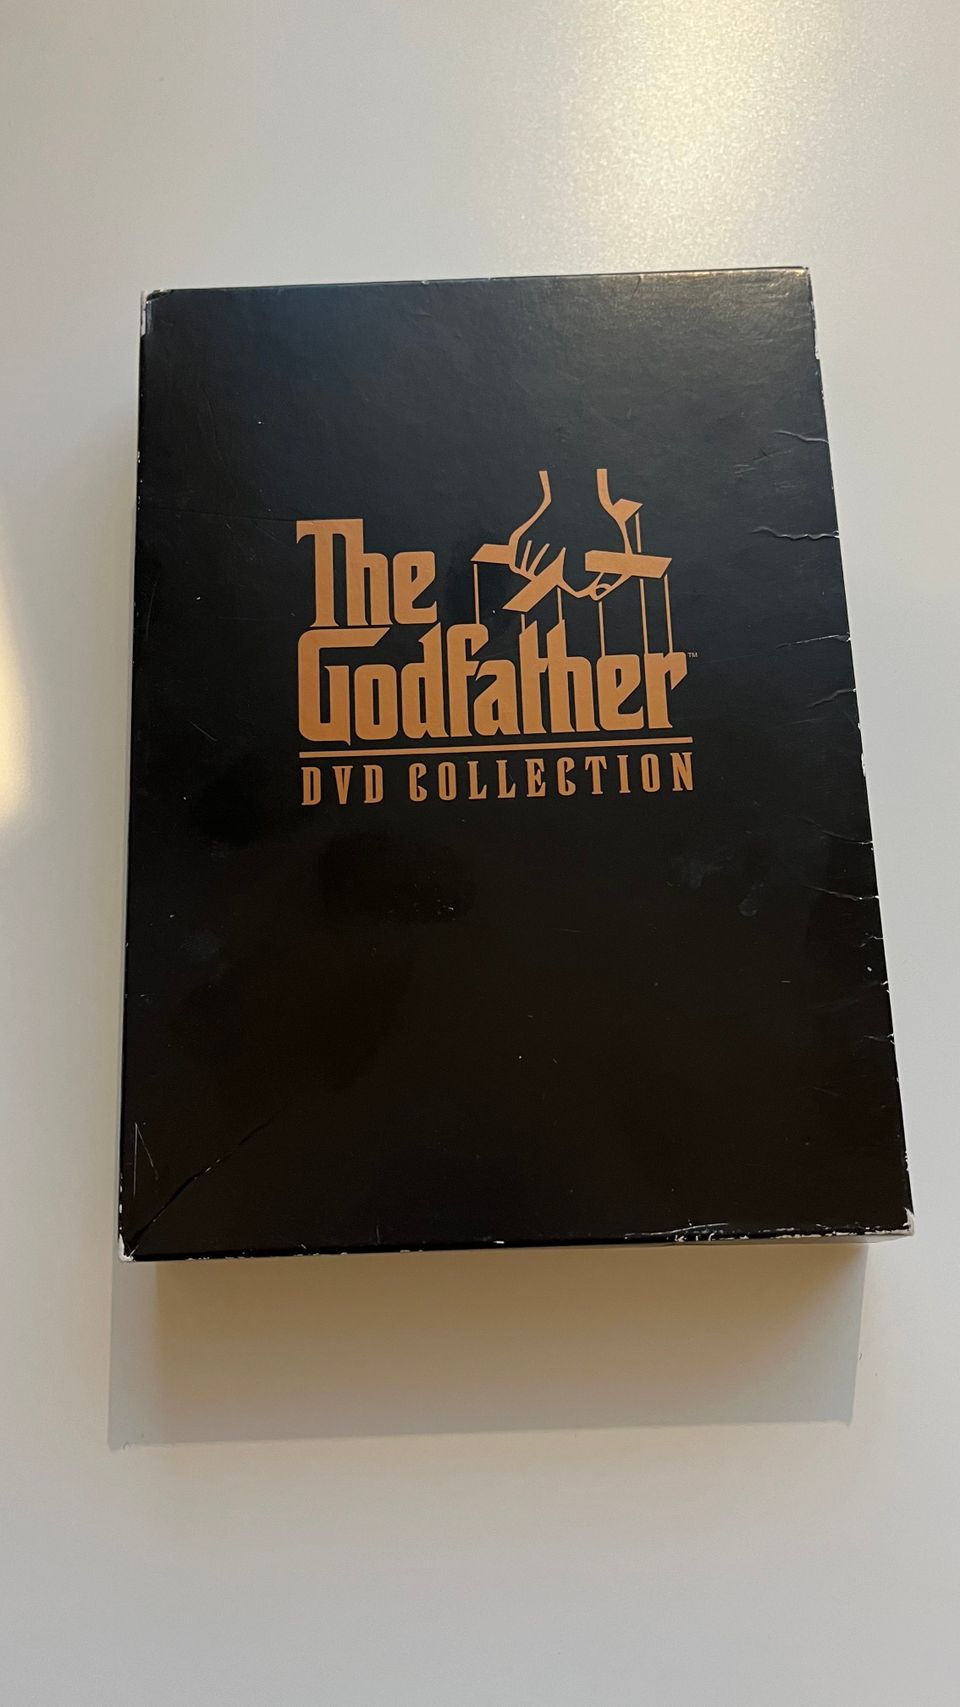 Kummisetä Godfather DVD Collection